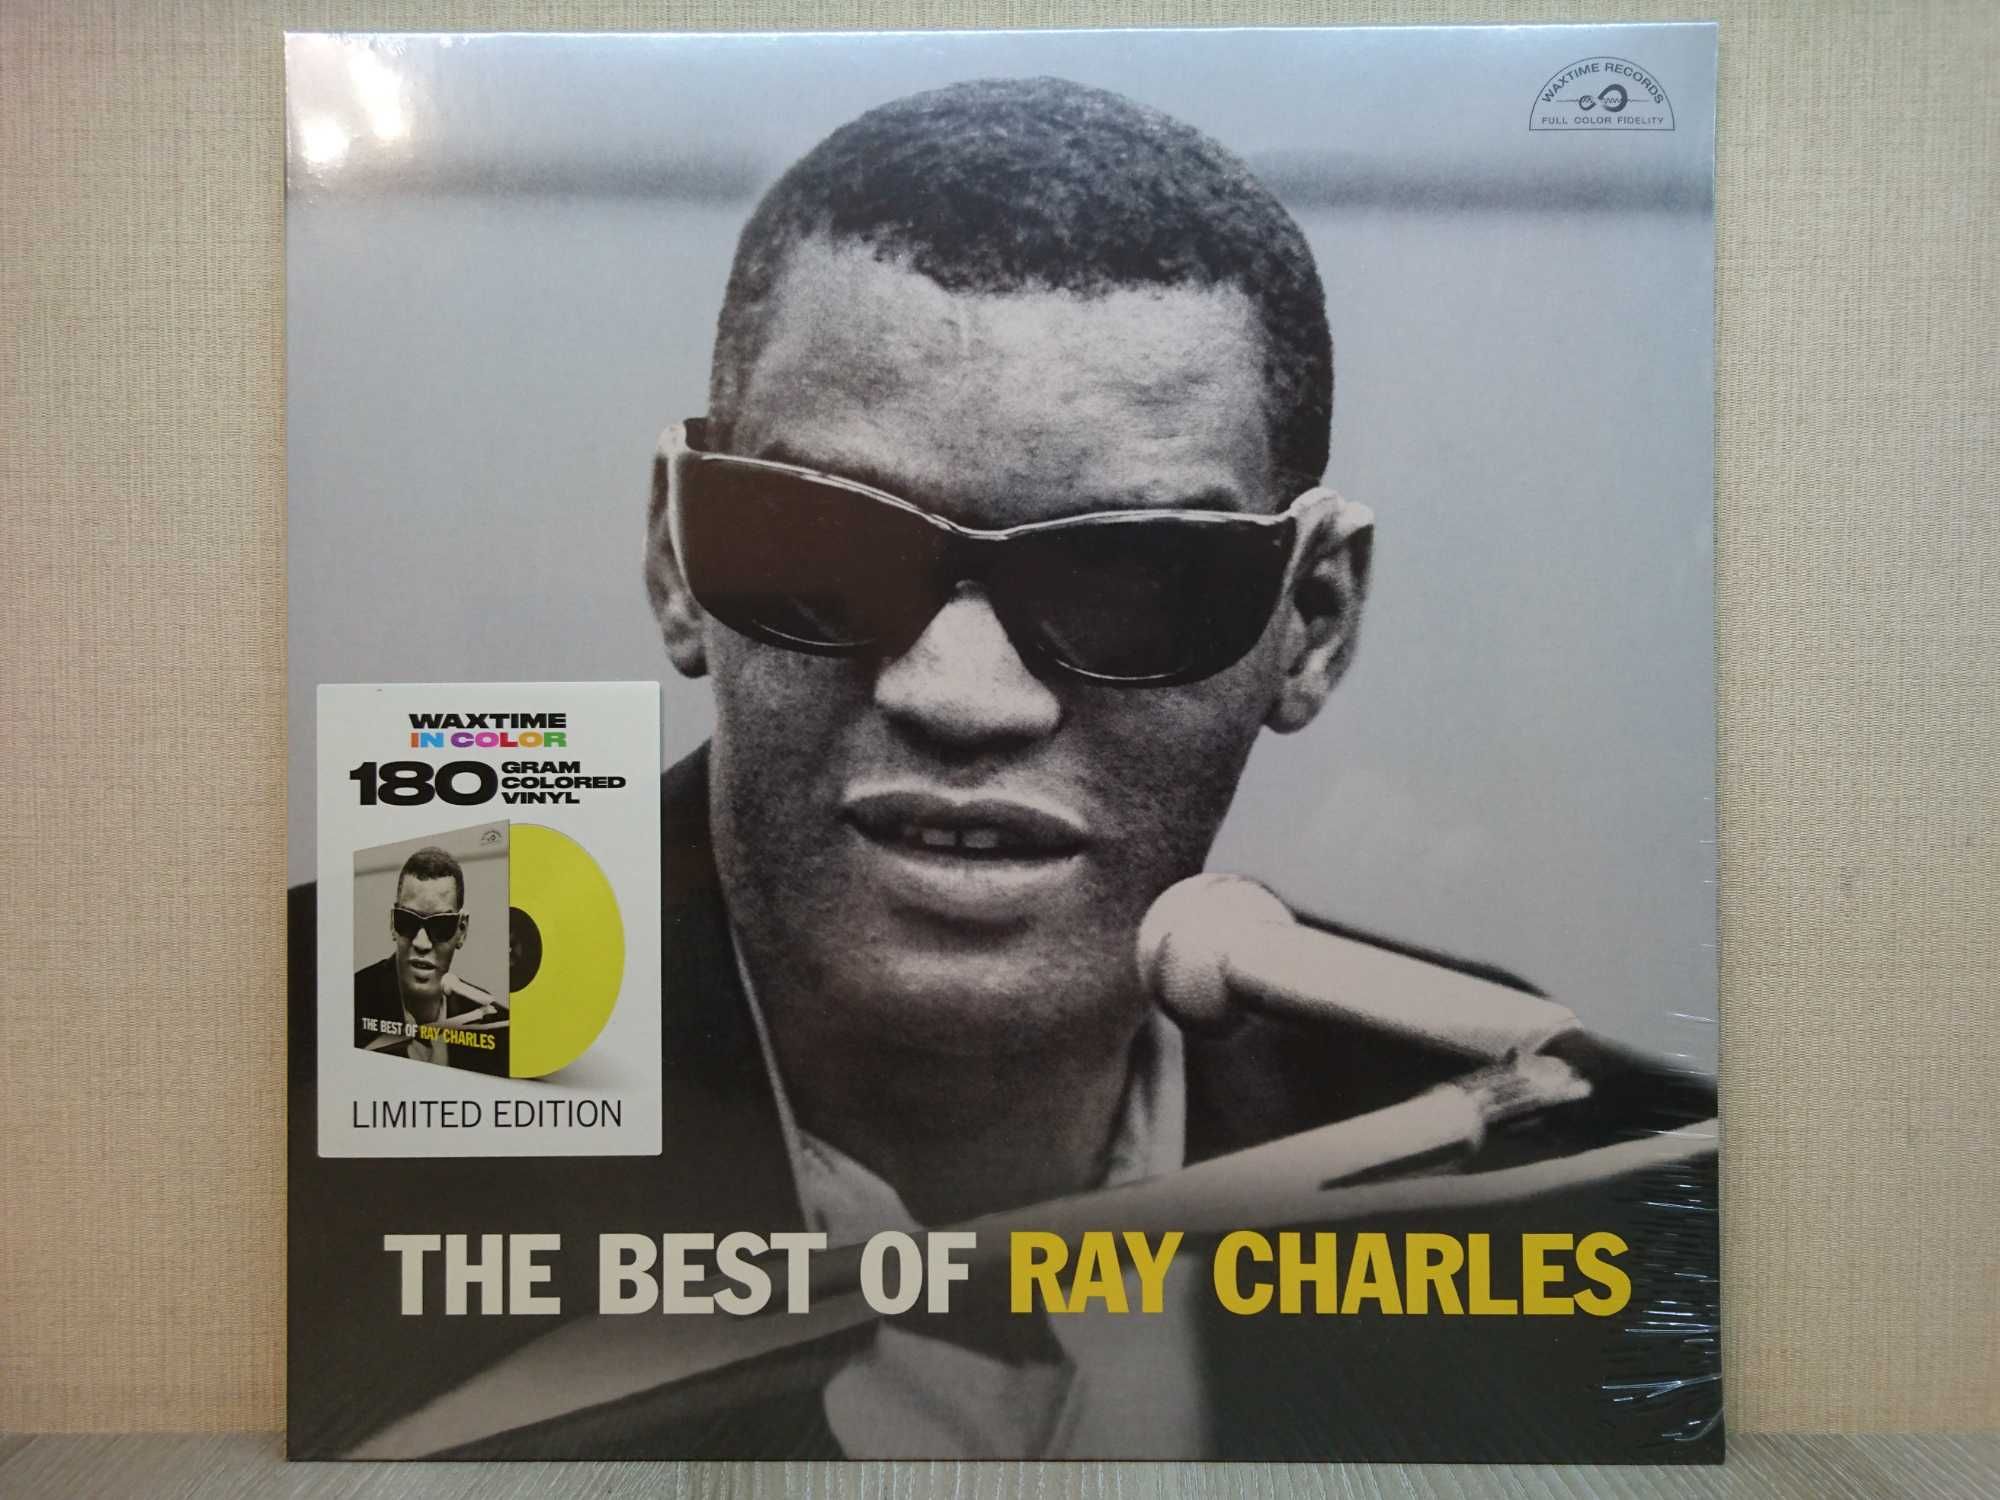 Виниловая пластинка Ray Charles ‎– The Best Of Рэй Чарльз ЖЁЛТАЯ НОВАЯ